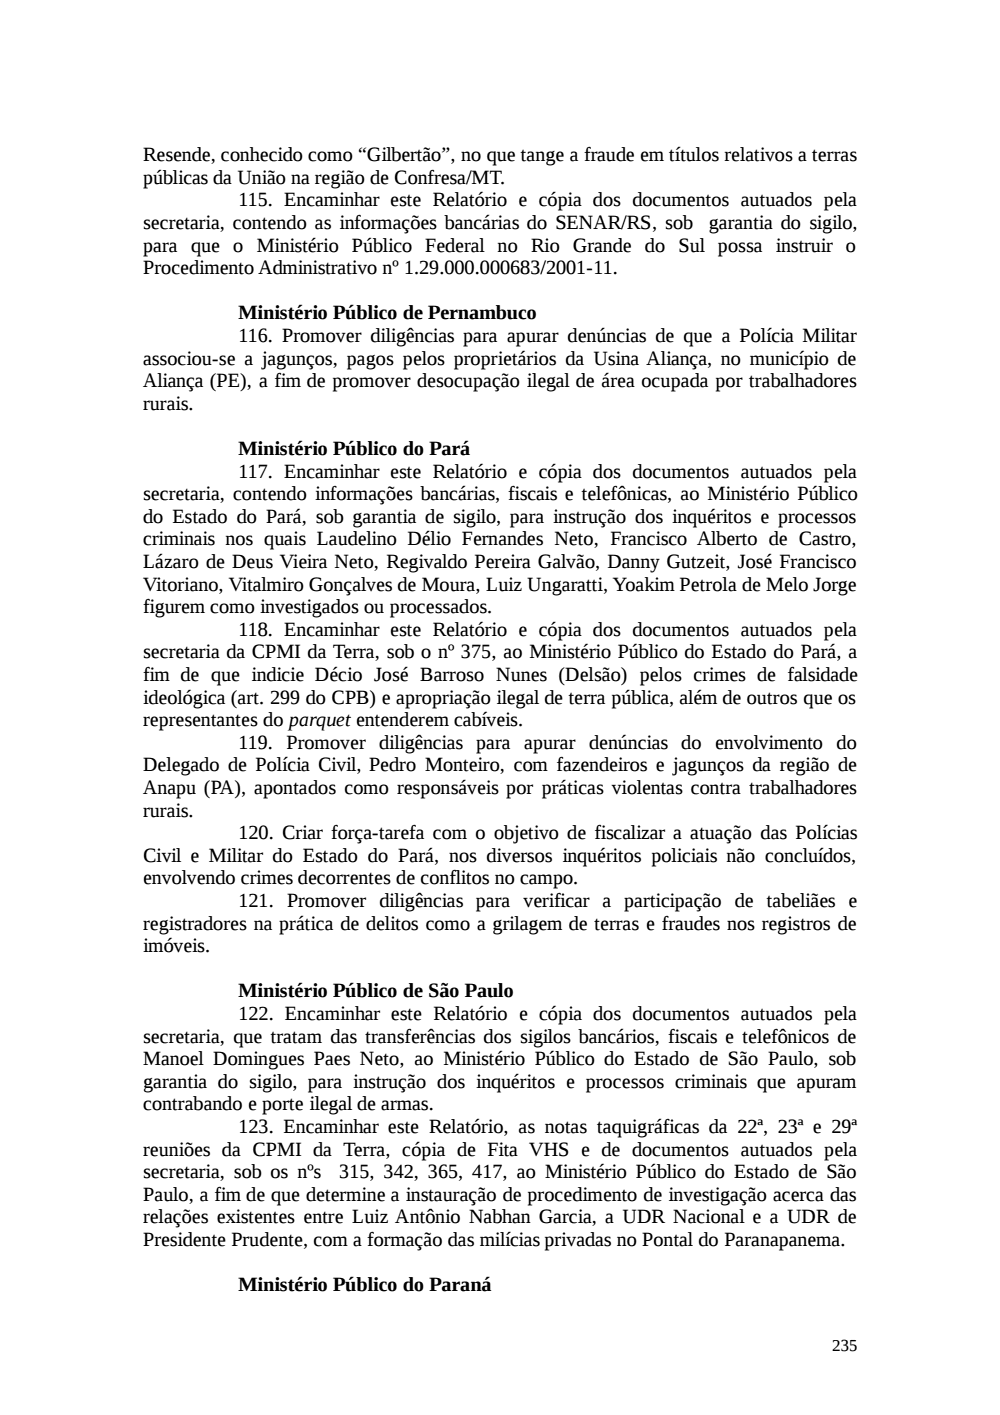 Page 235 from Relatório final da comissão